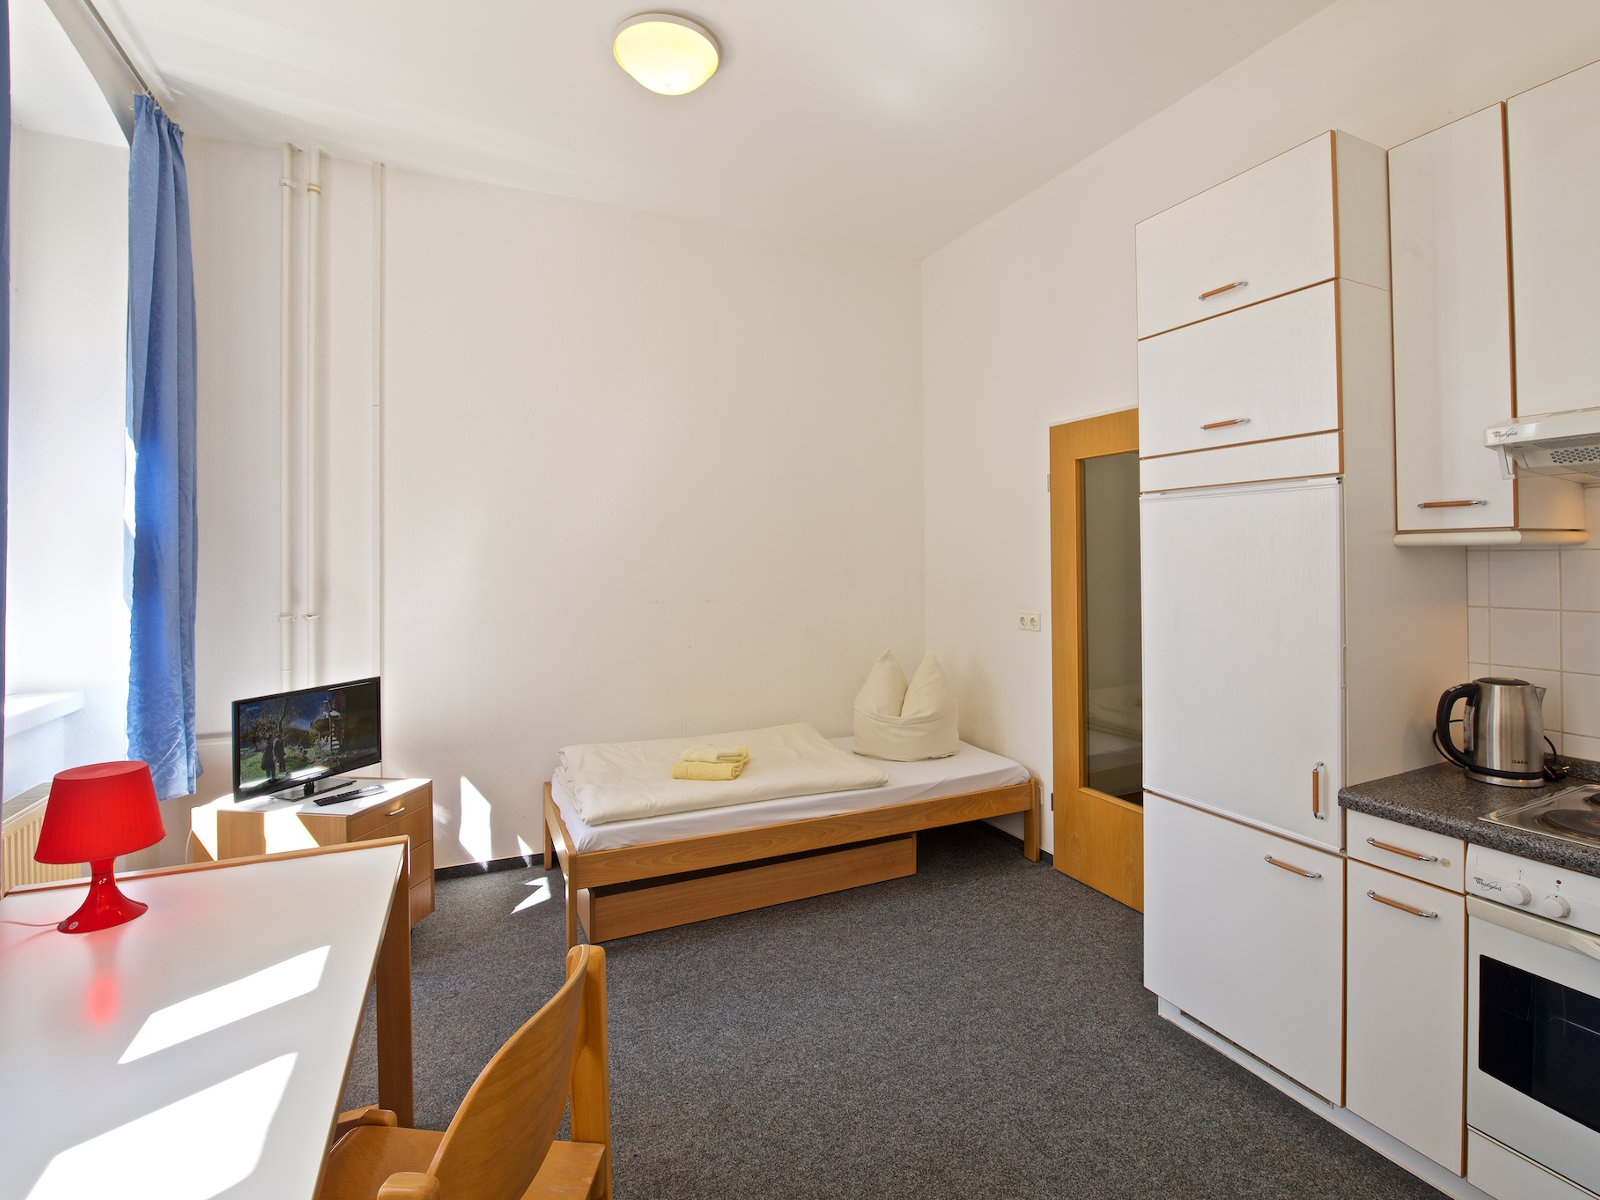 One-room flat or apartment in Görlitz